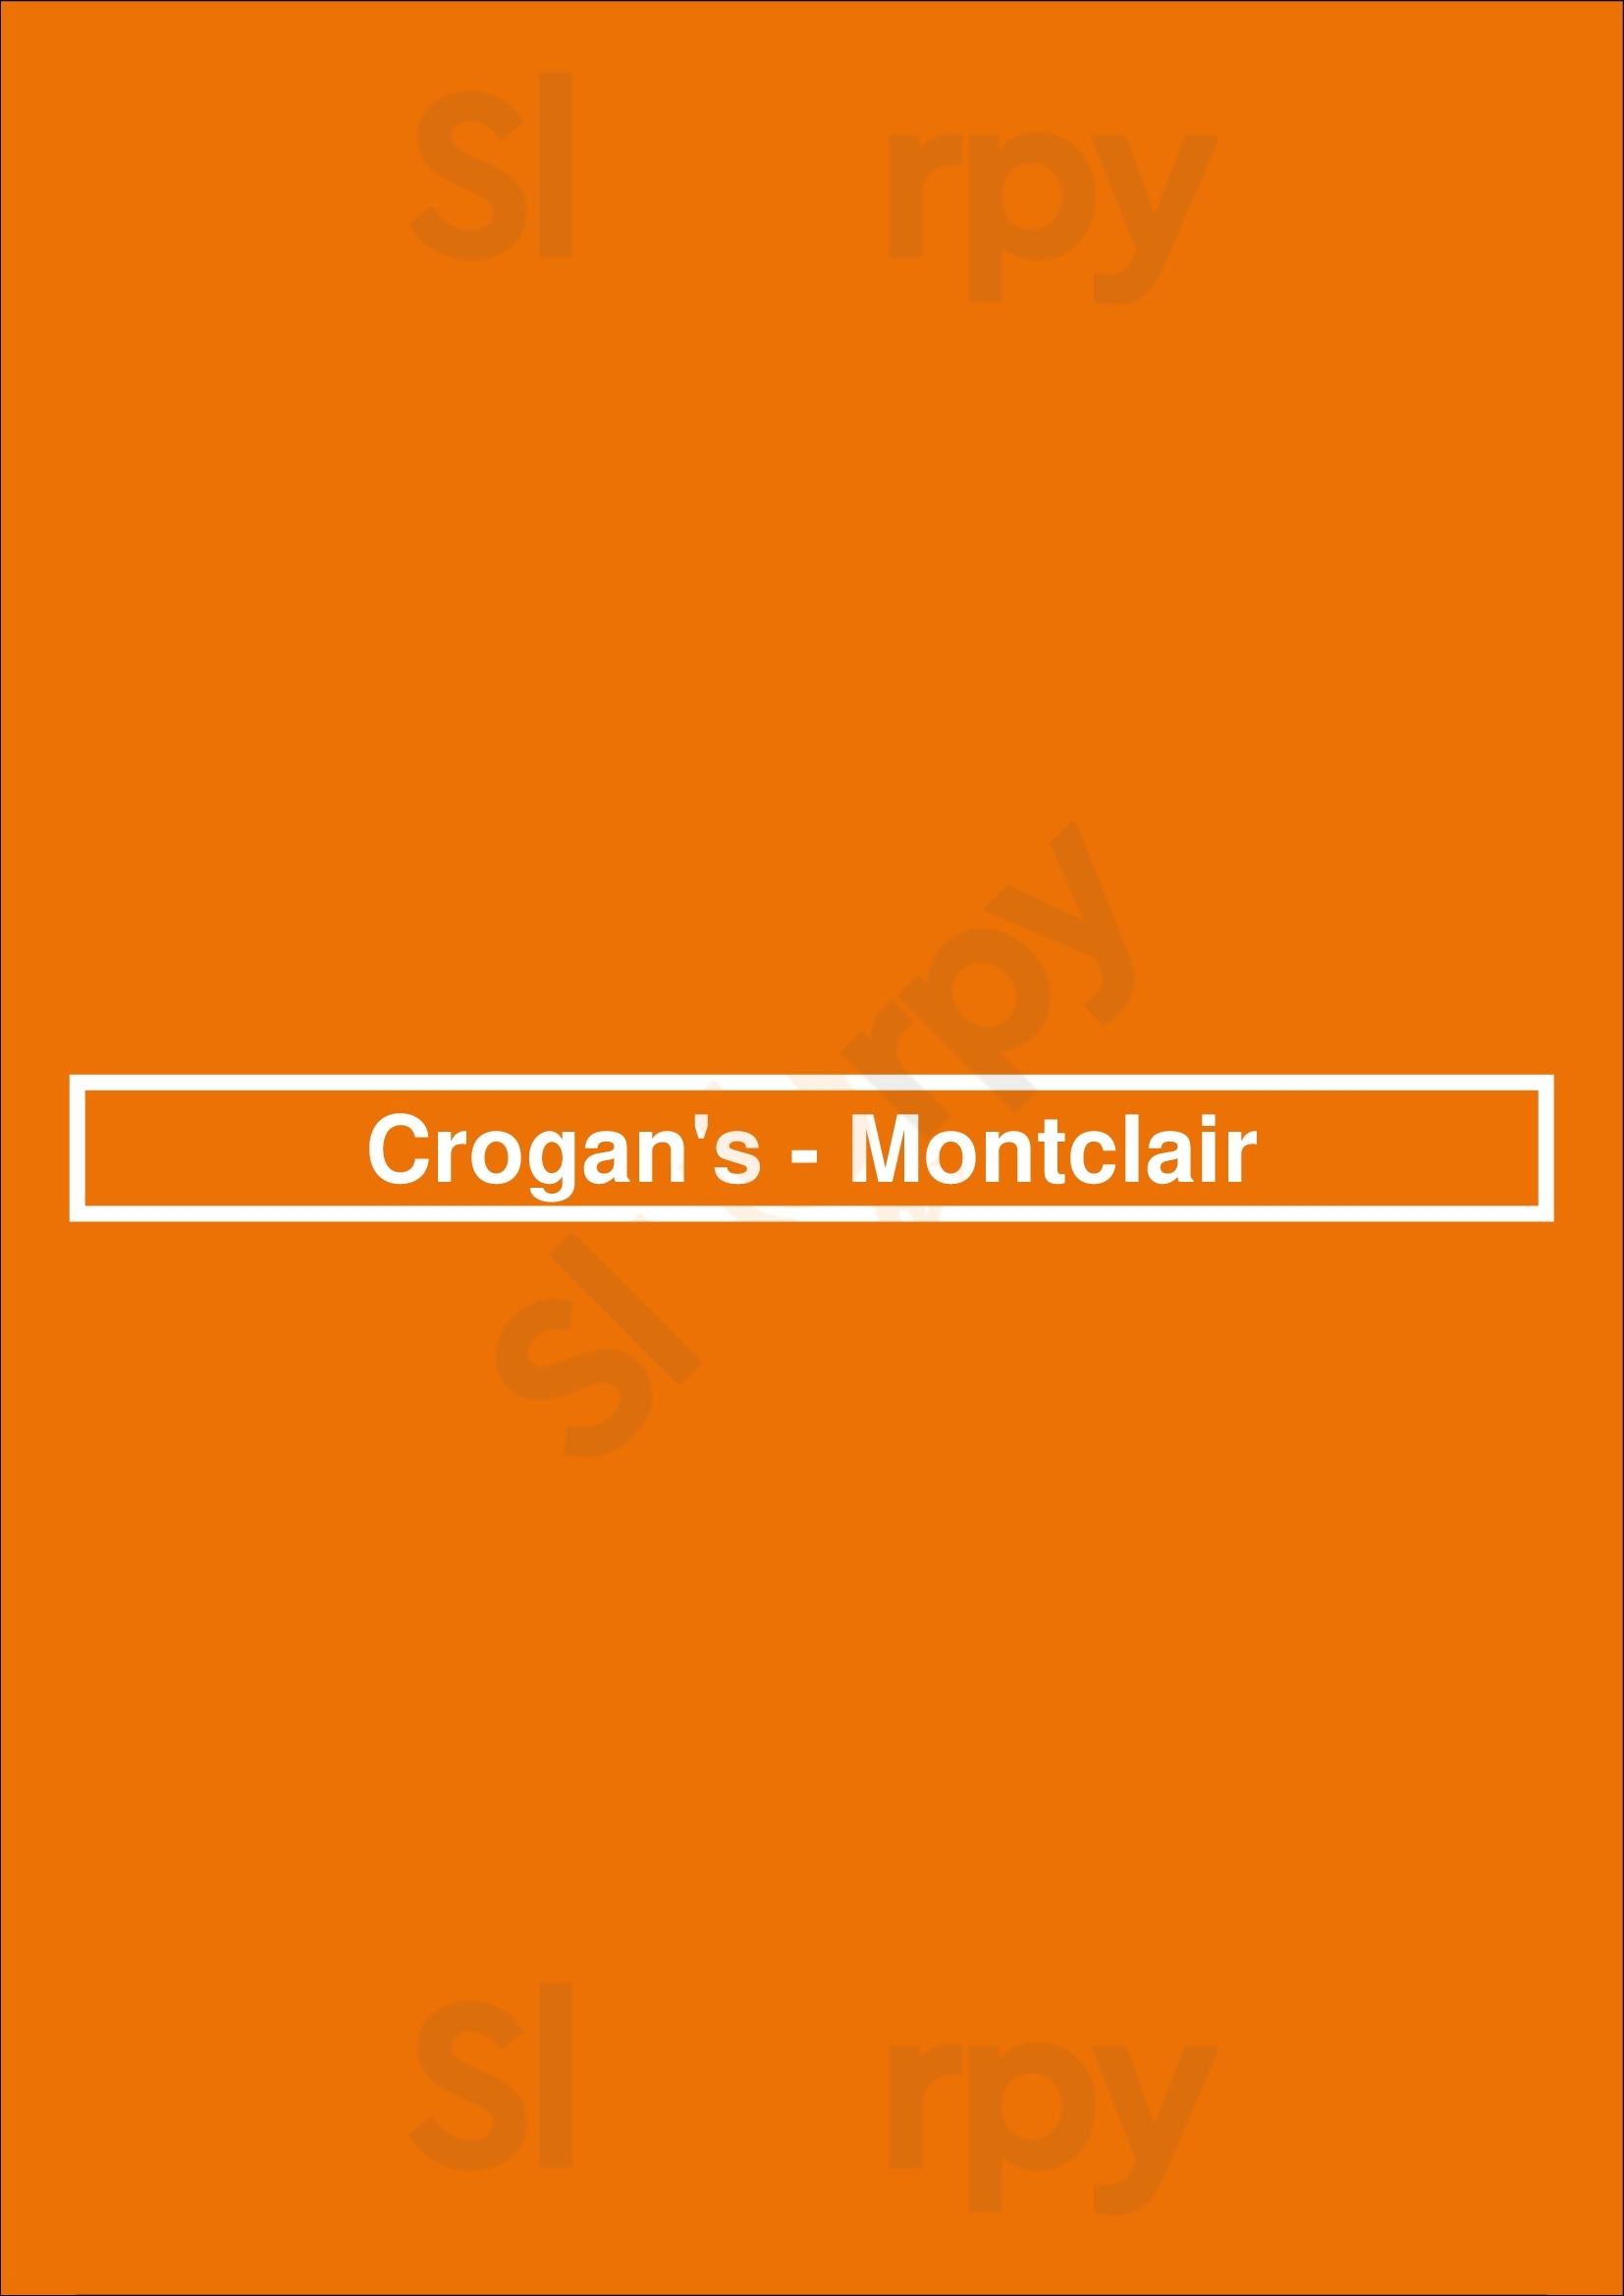 Crogan's - Montclair Oakland Menu - 1